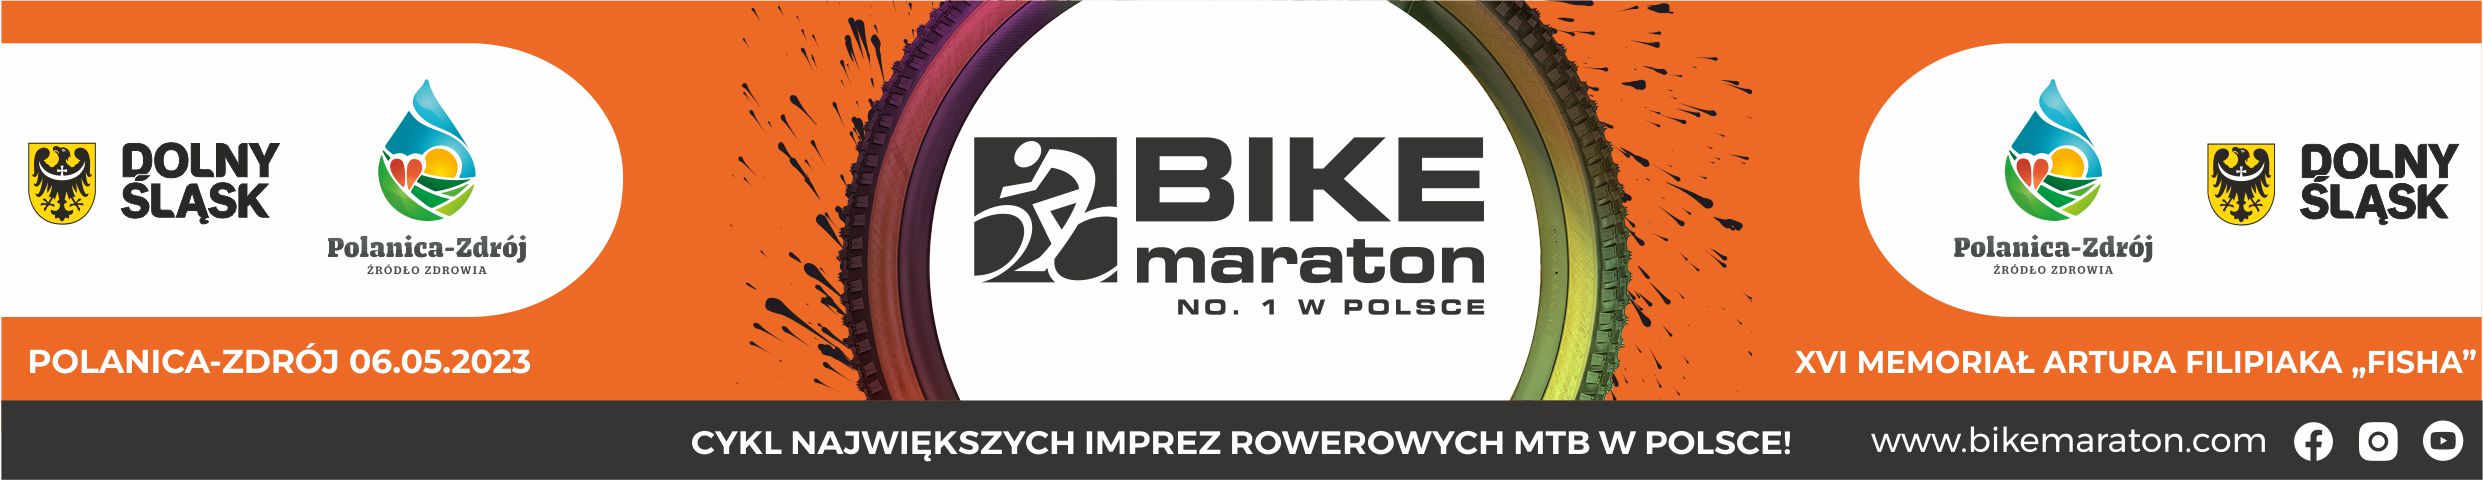 Bike Maraton Polanica-Zdrój na koniec majówki